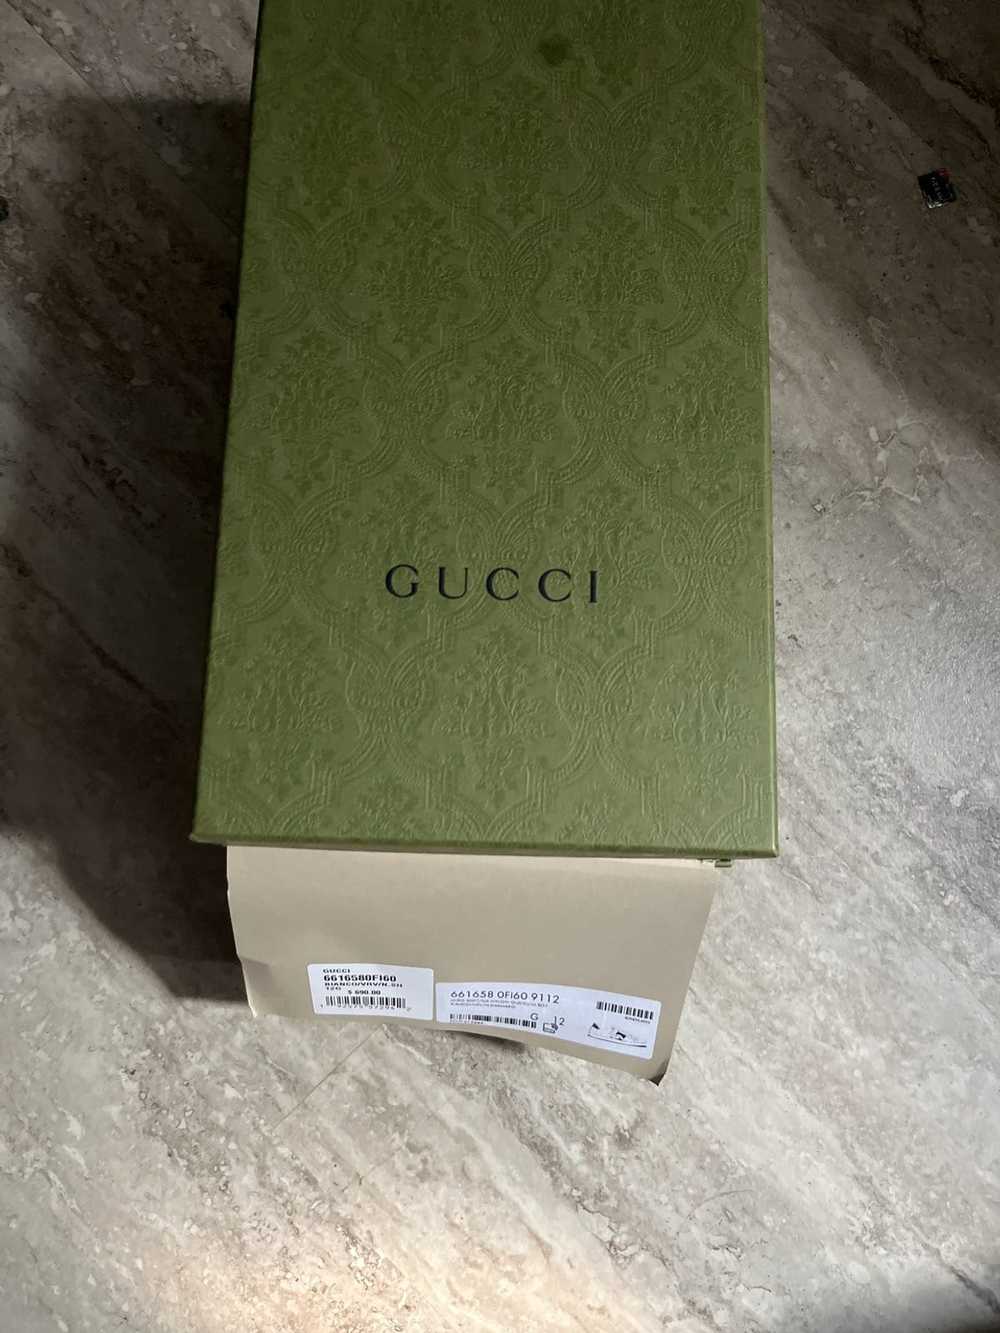 Gucci Gucci bananya shoes - image 5